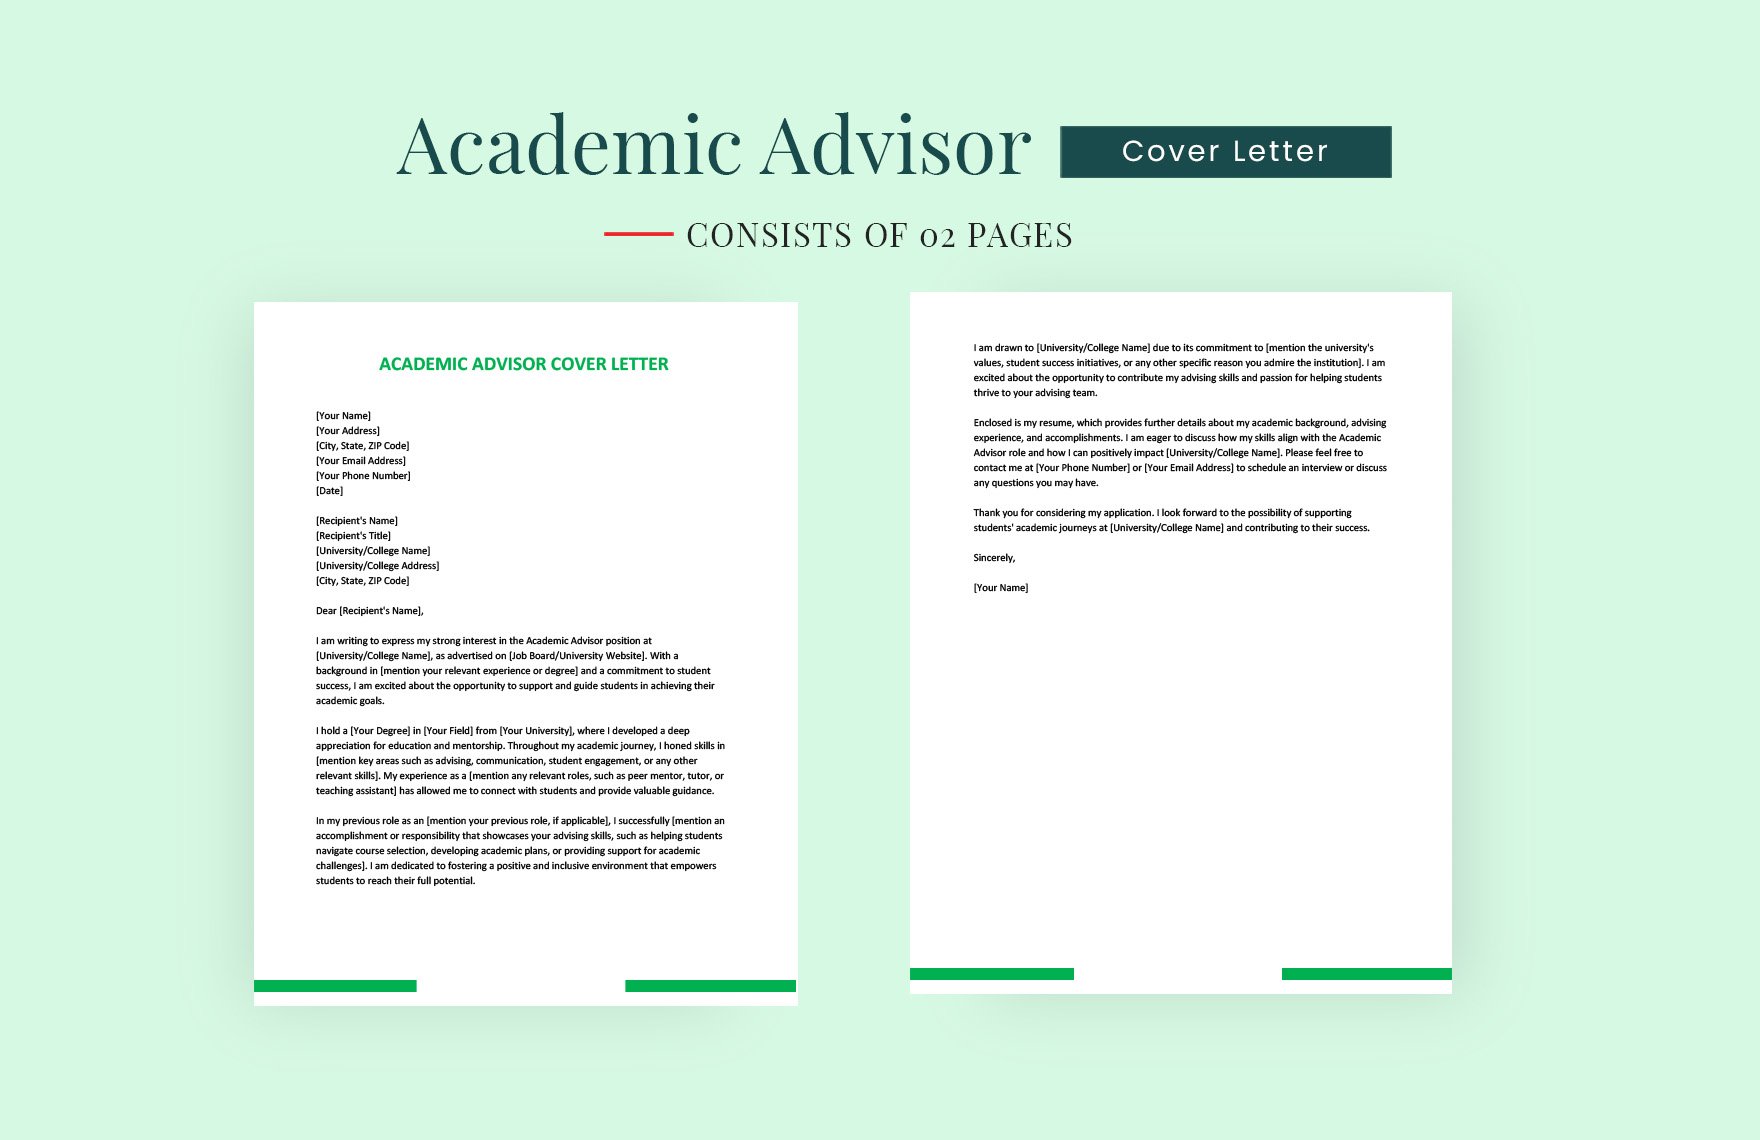 Academic Advisor Cover Letter